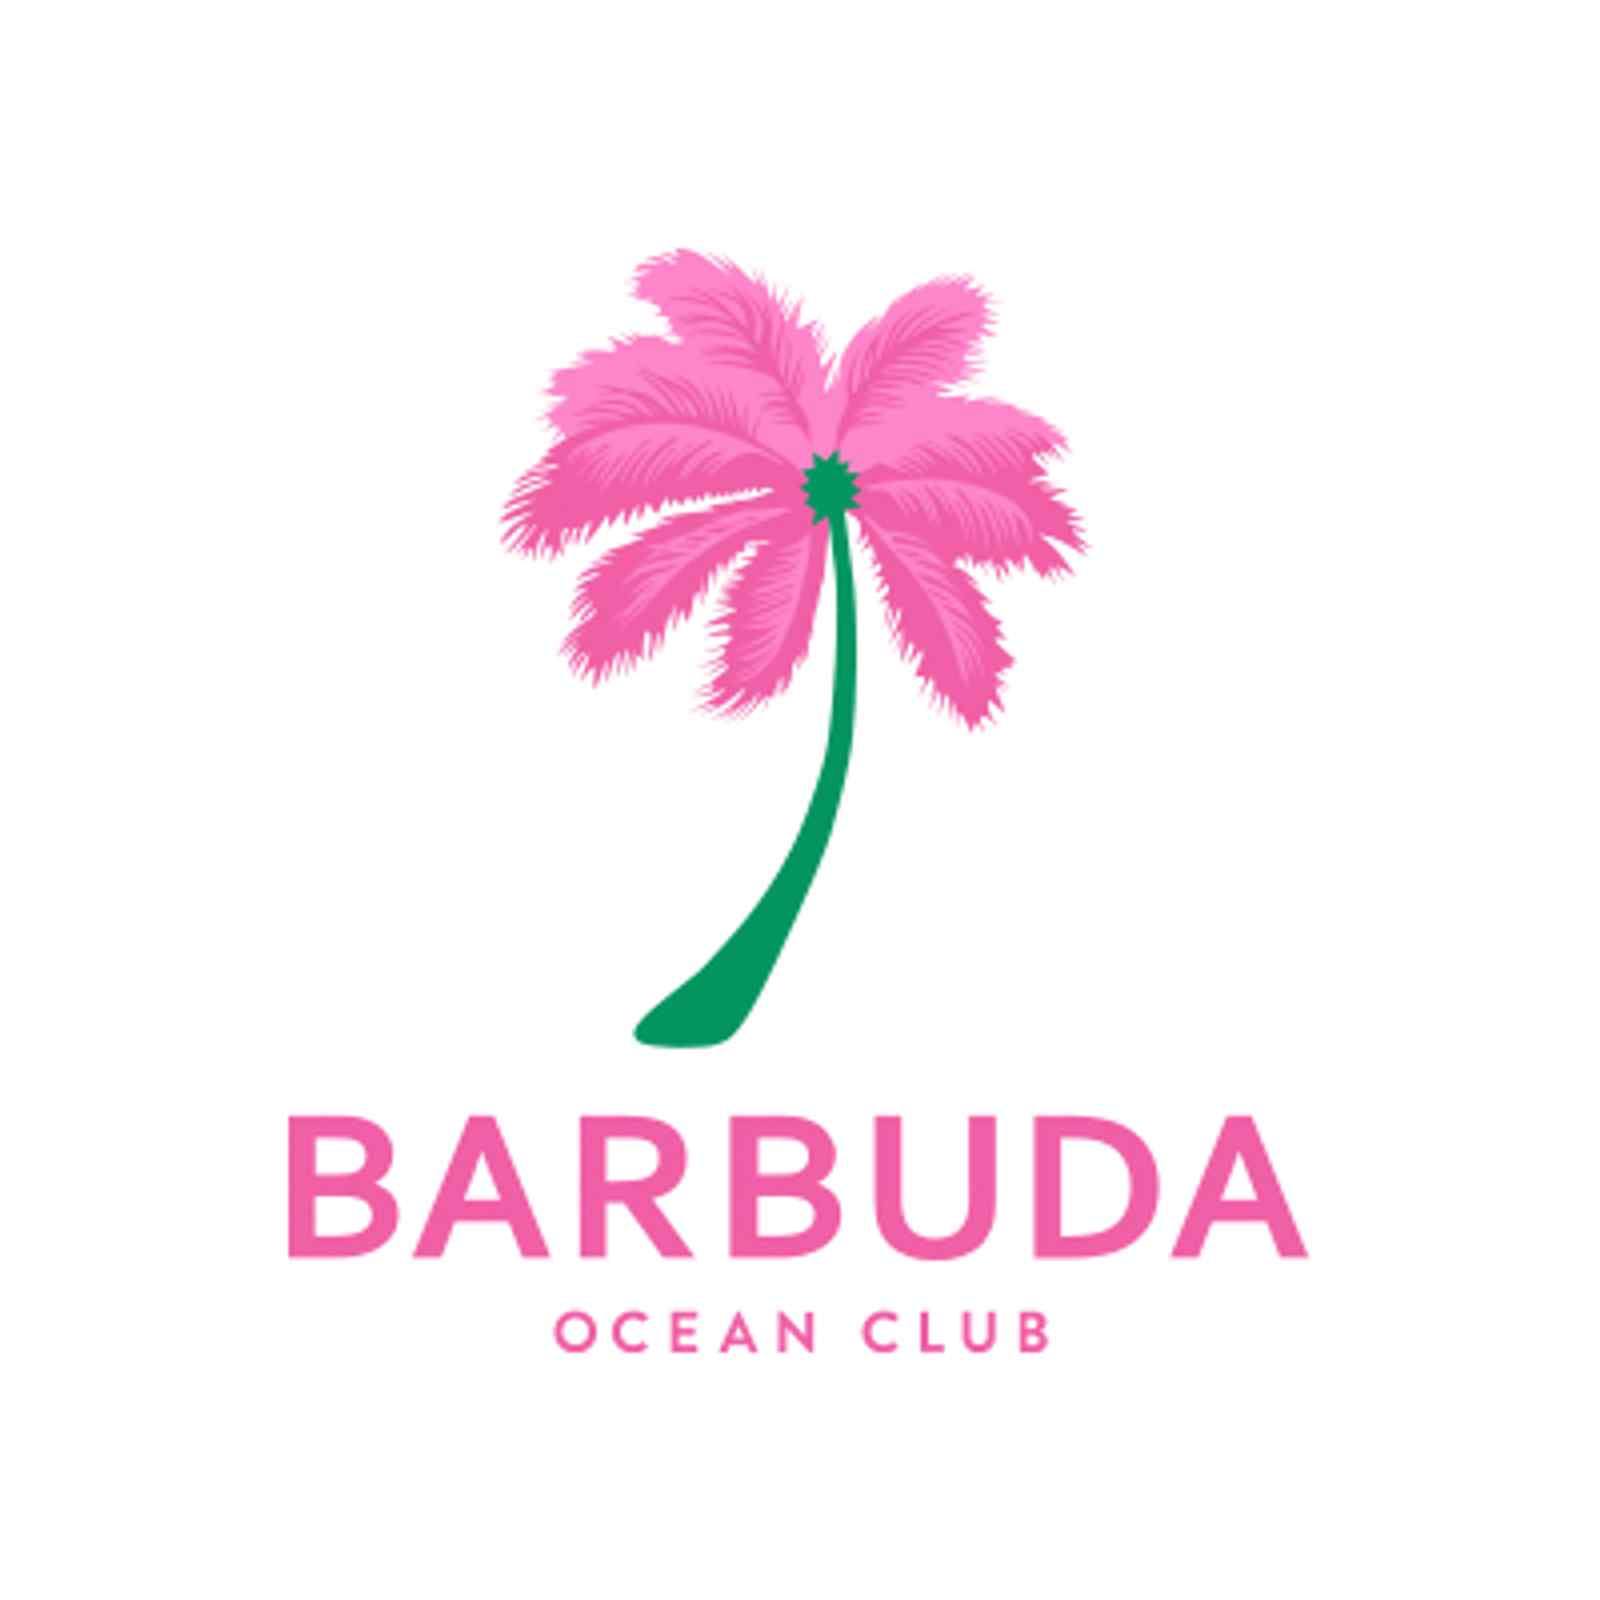 Barbuda Ocean Club in Barbuda